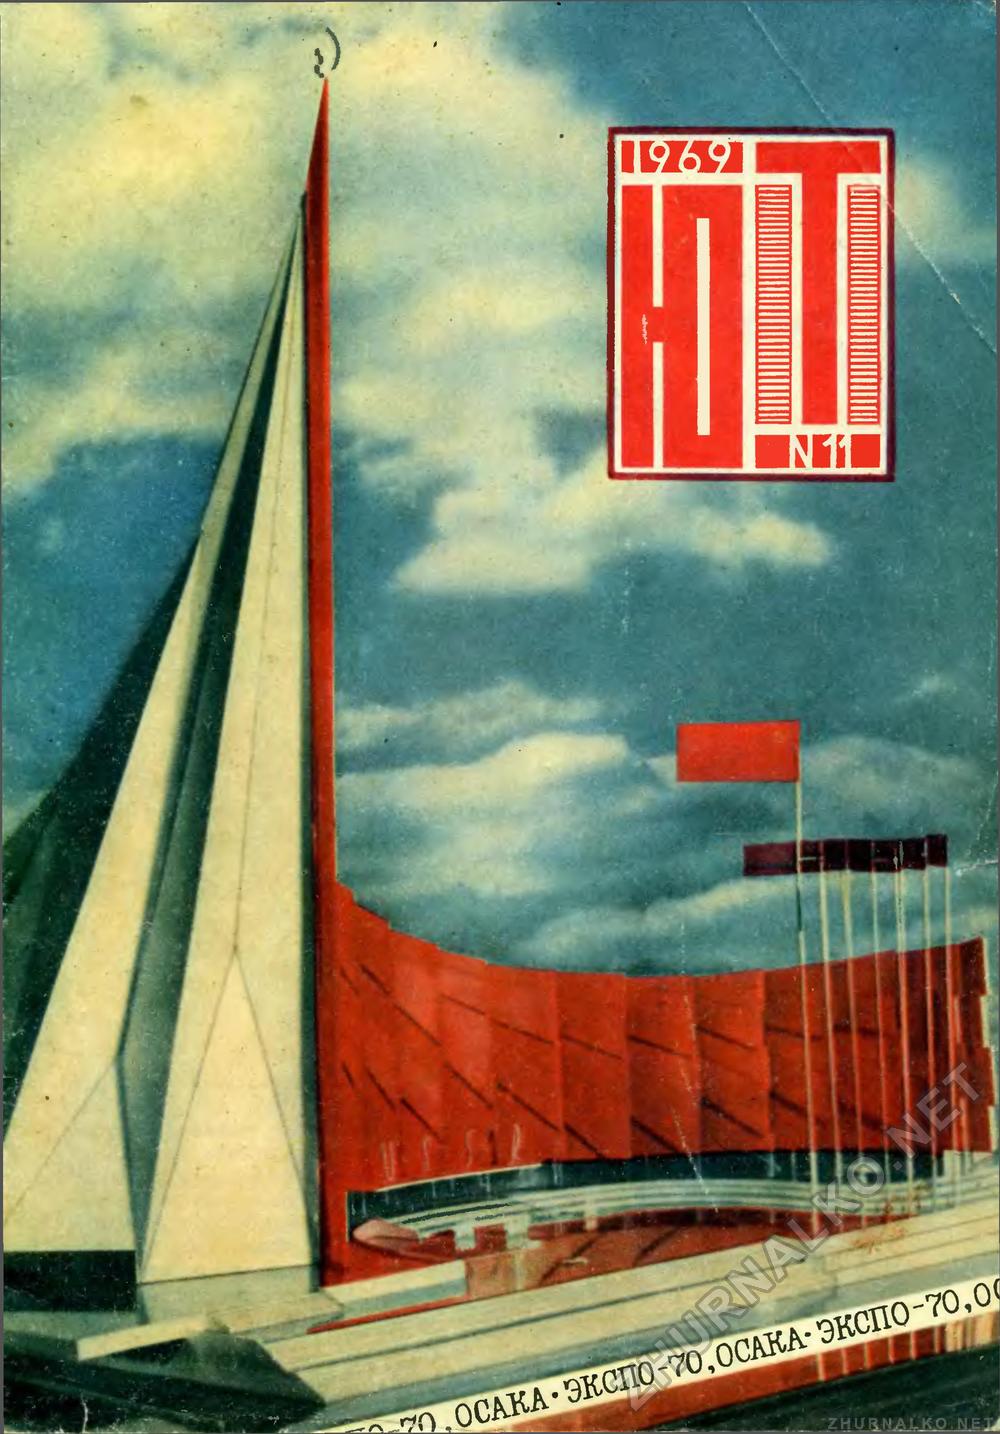   1969-11,  1